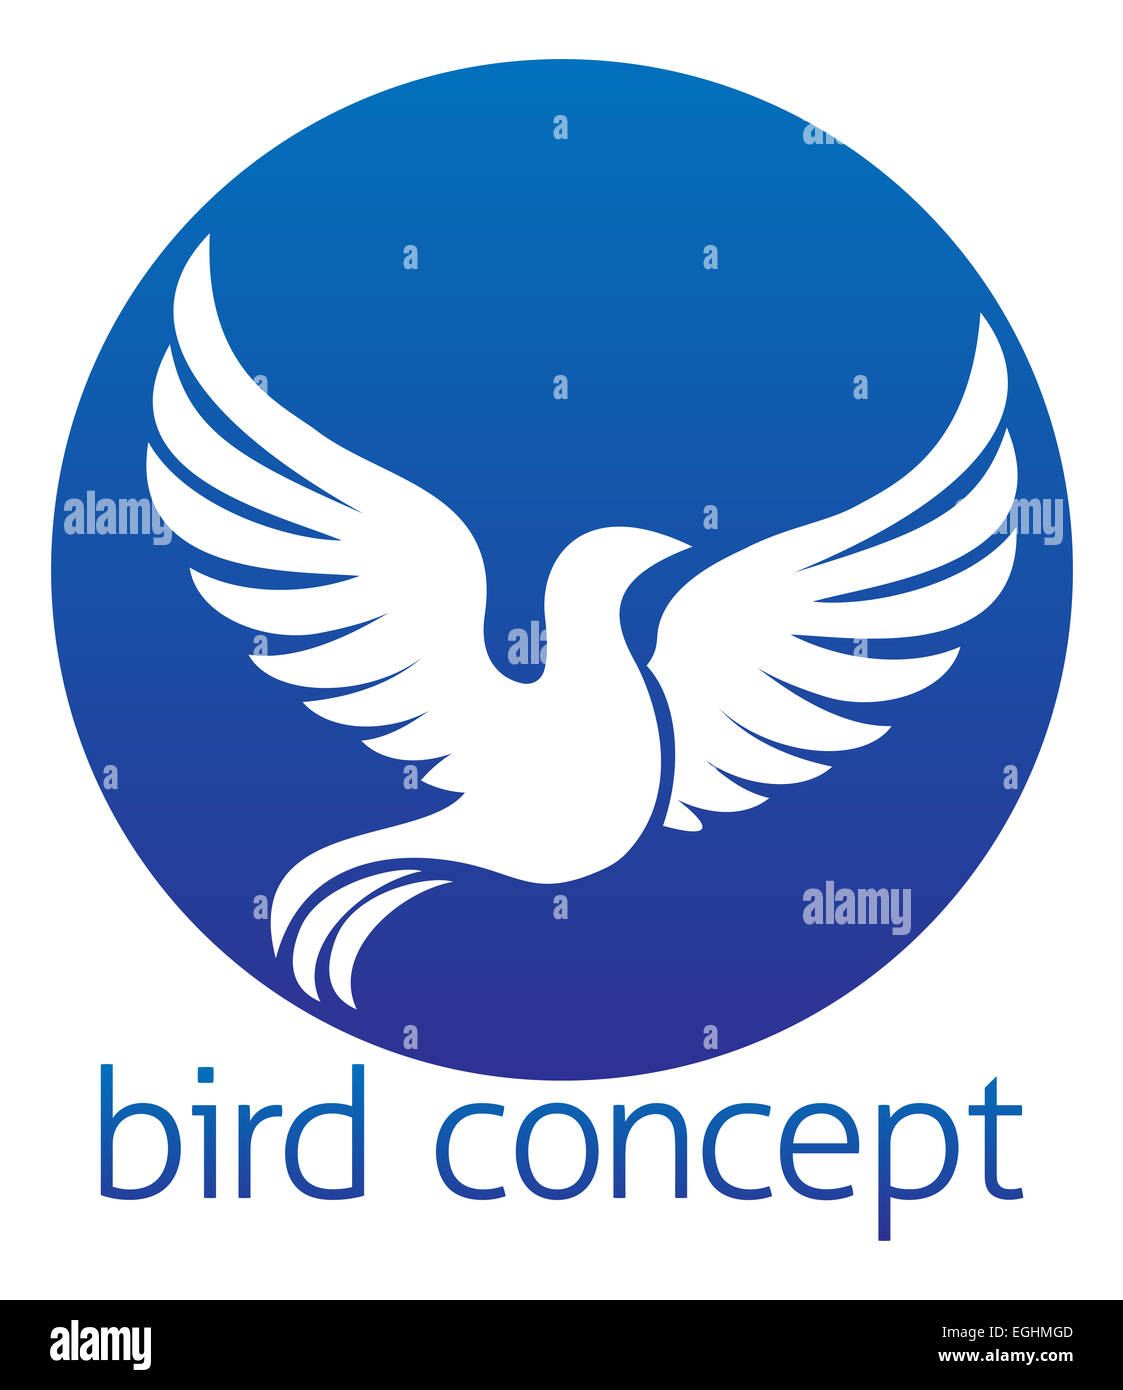 Una illustrazione astratta di un uccello bianco o colomba design circolare Foto Stock